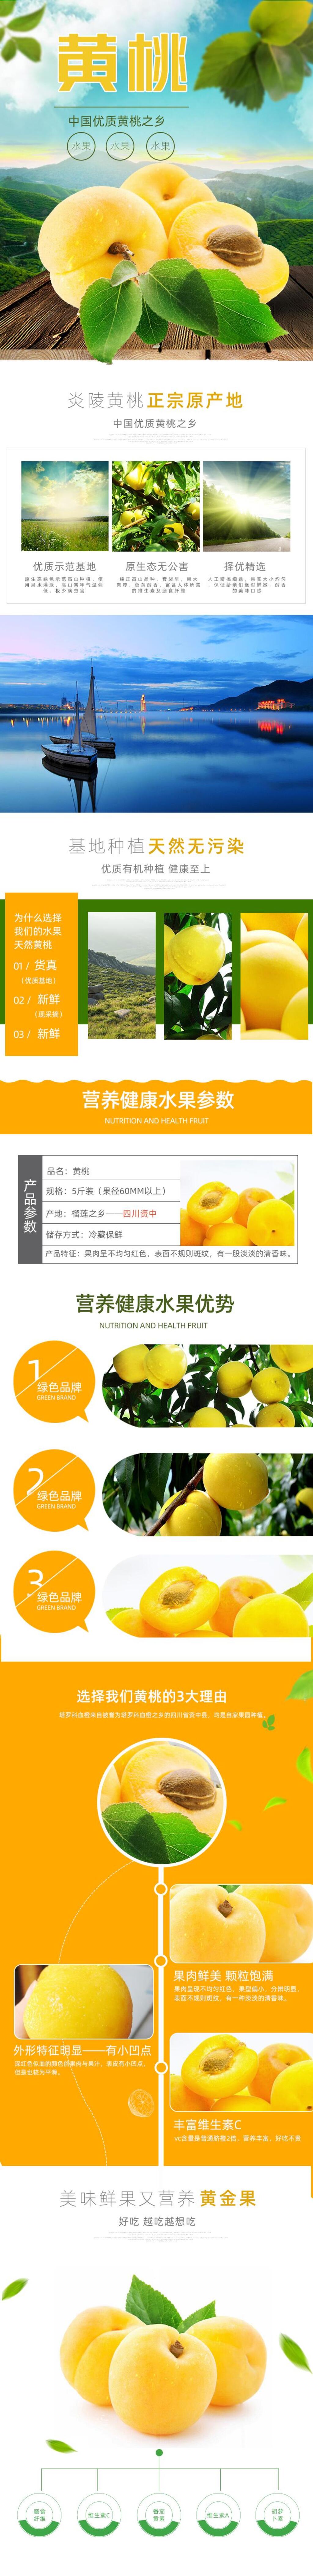 黄桃品种大全介绍图片